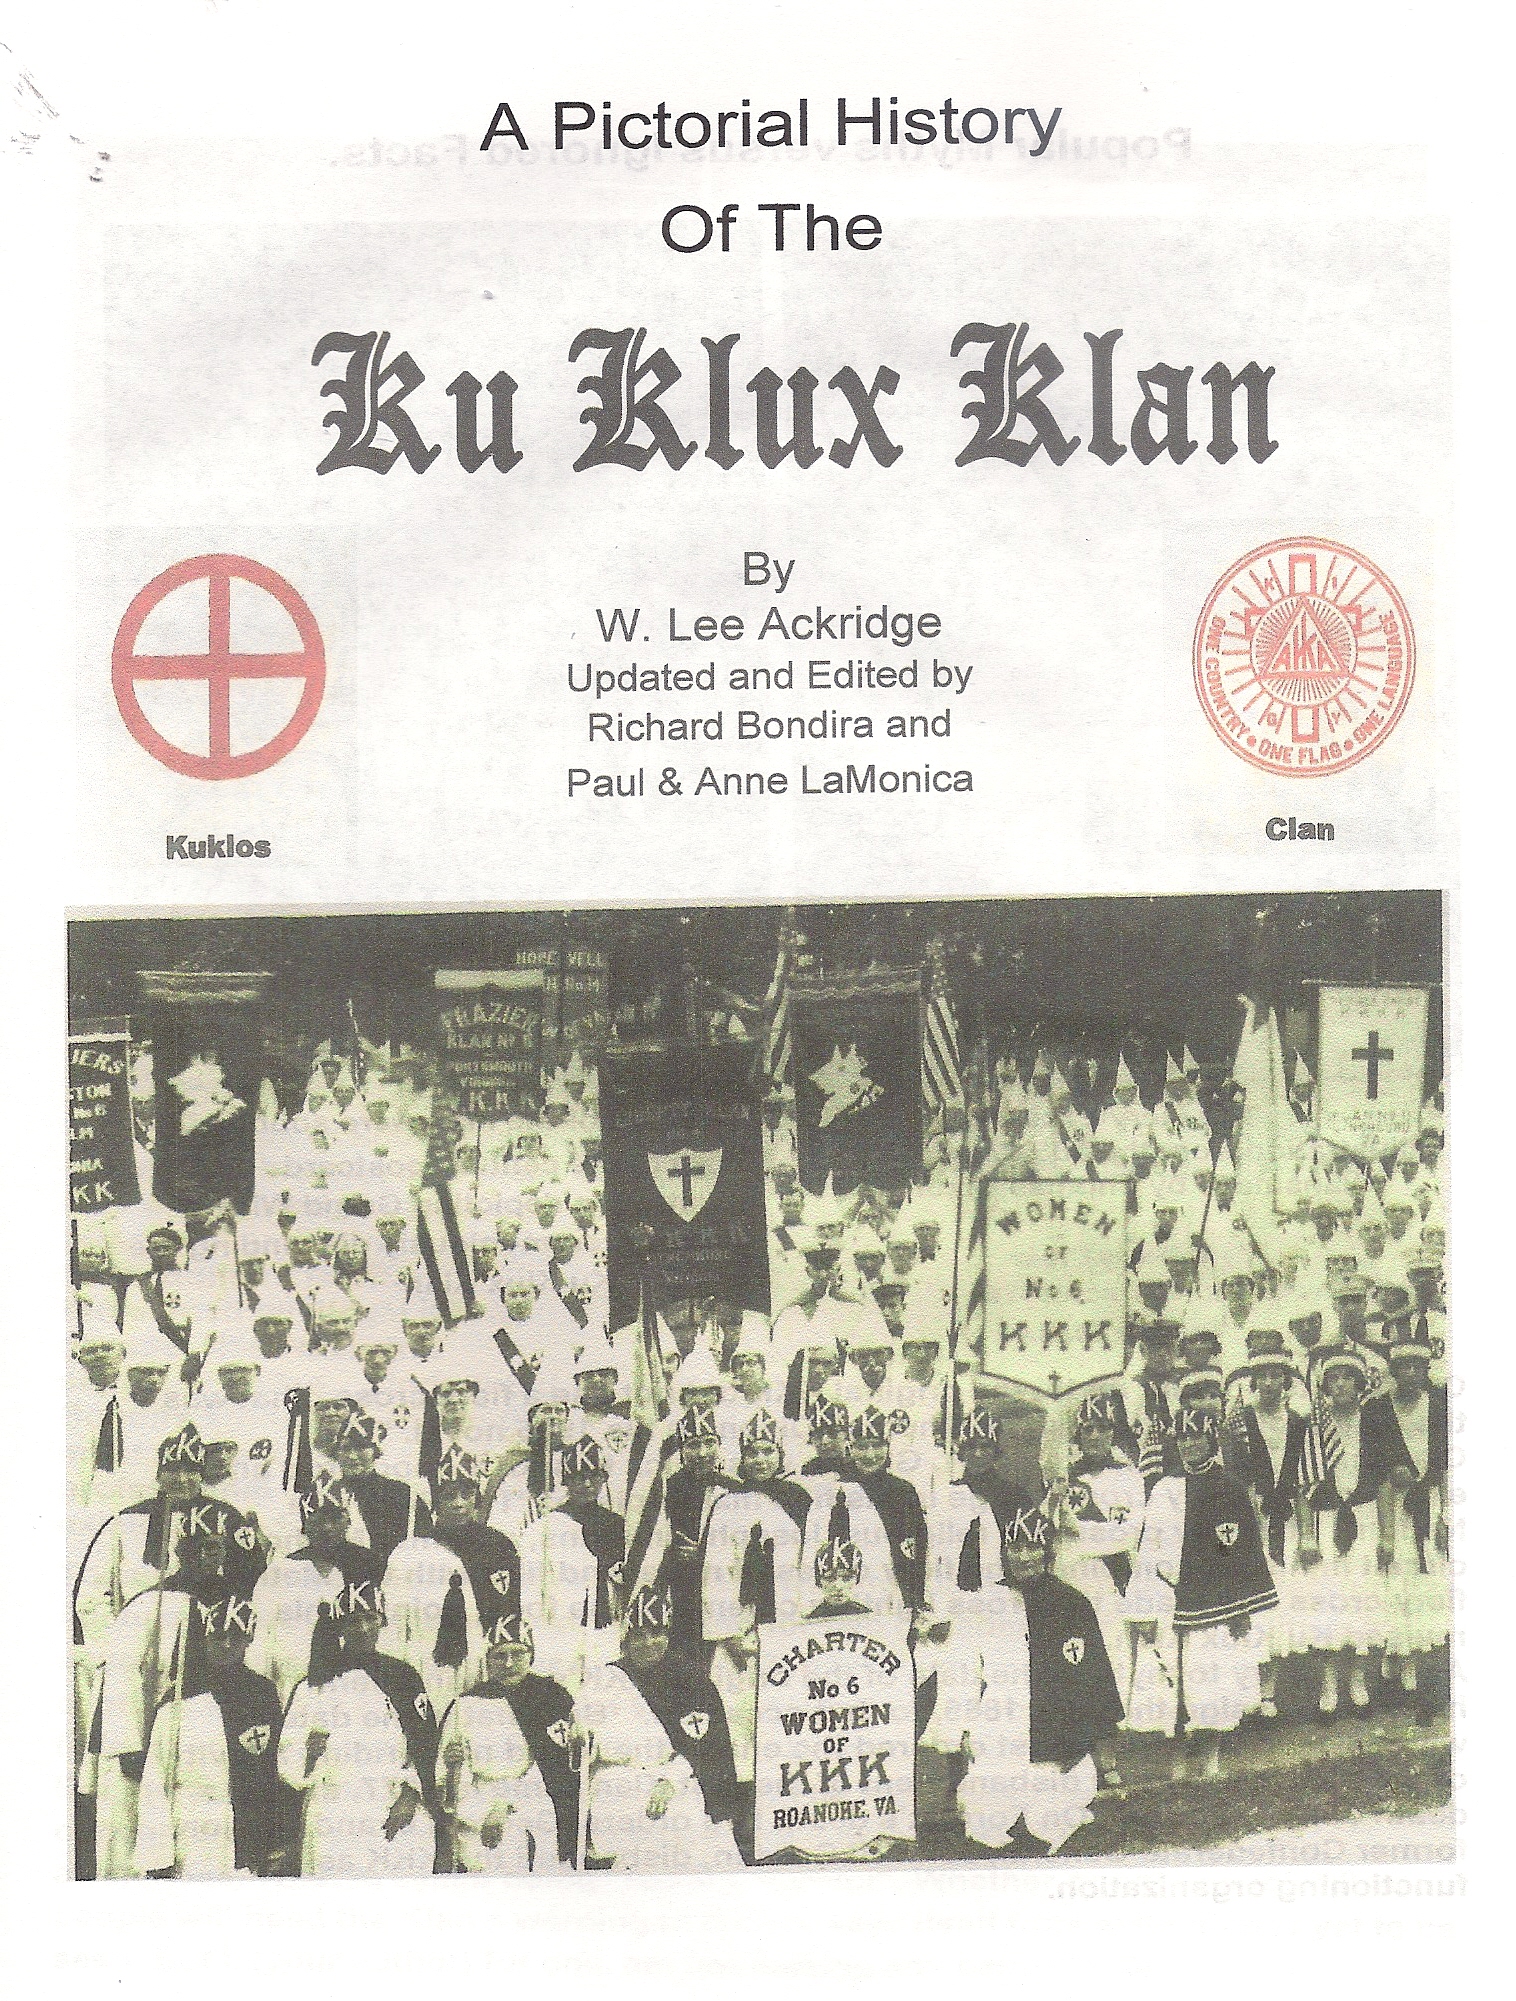 Klan items For Sale Page 4- booklets,officers,klansmen>